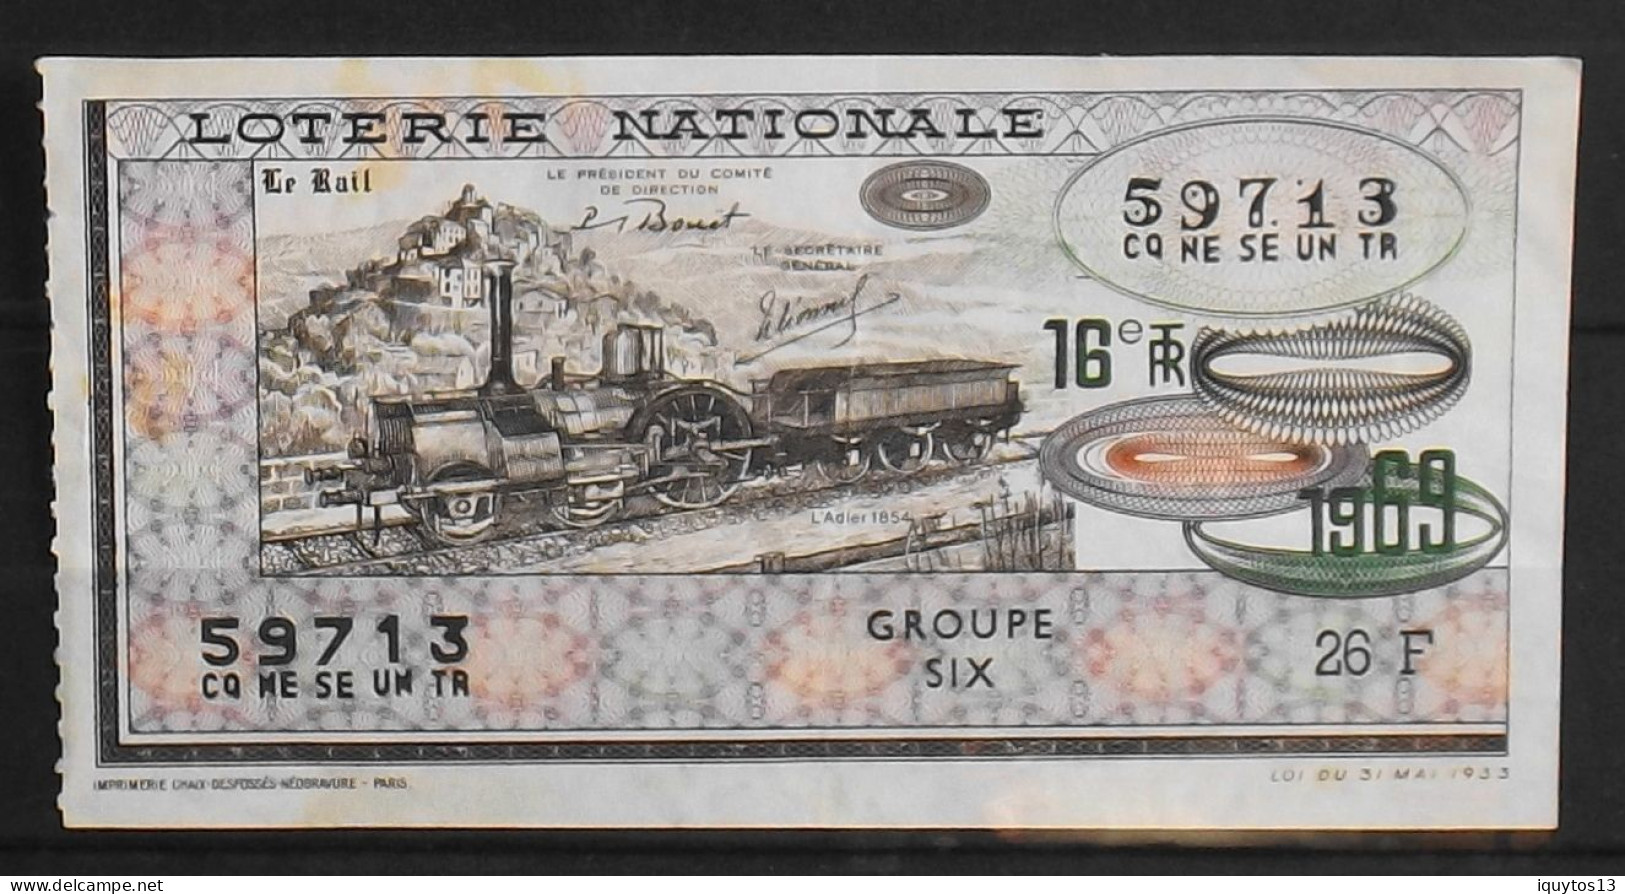 BILLET DE LOTERIE NATIONALE - 1969 Le Rail - La Locomotive L'Adler 1854 - BE - Lottery Tickets